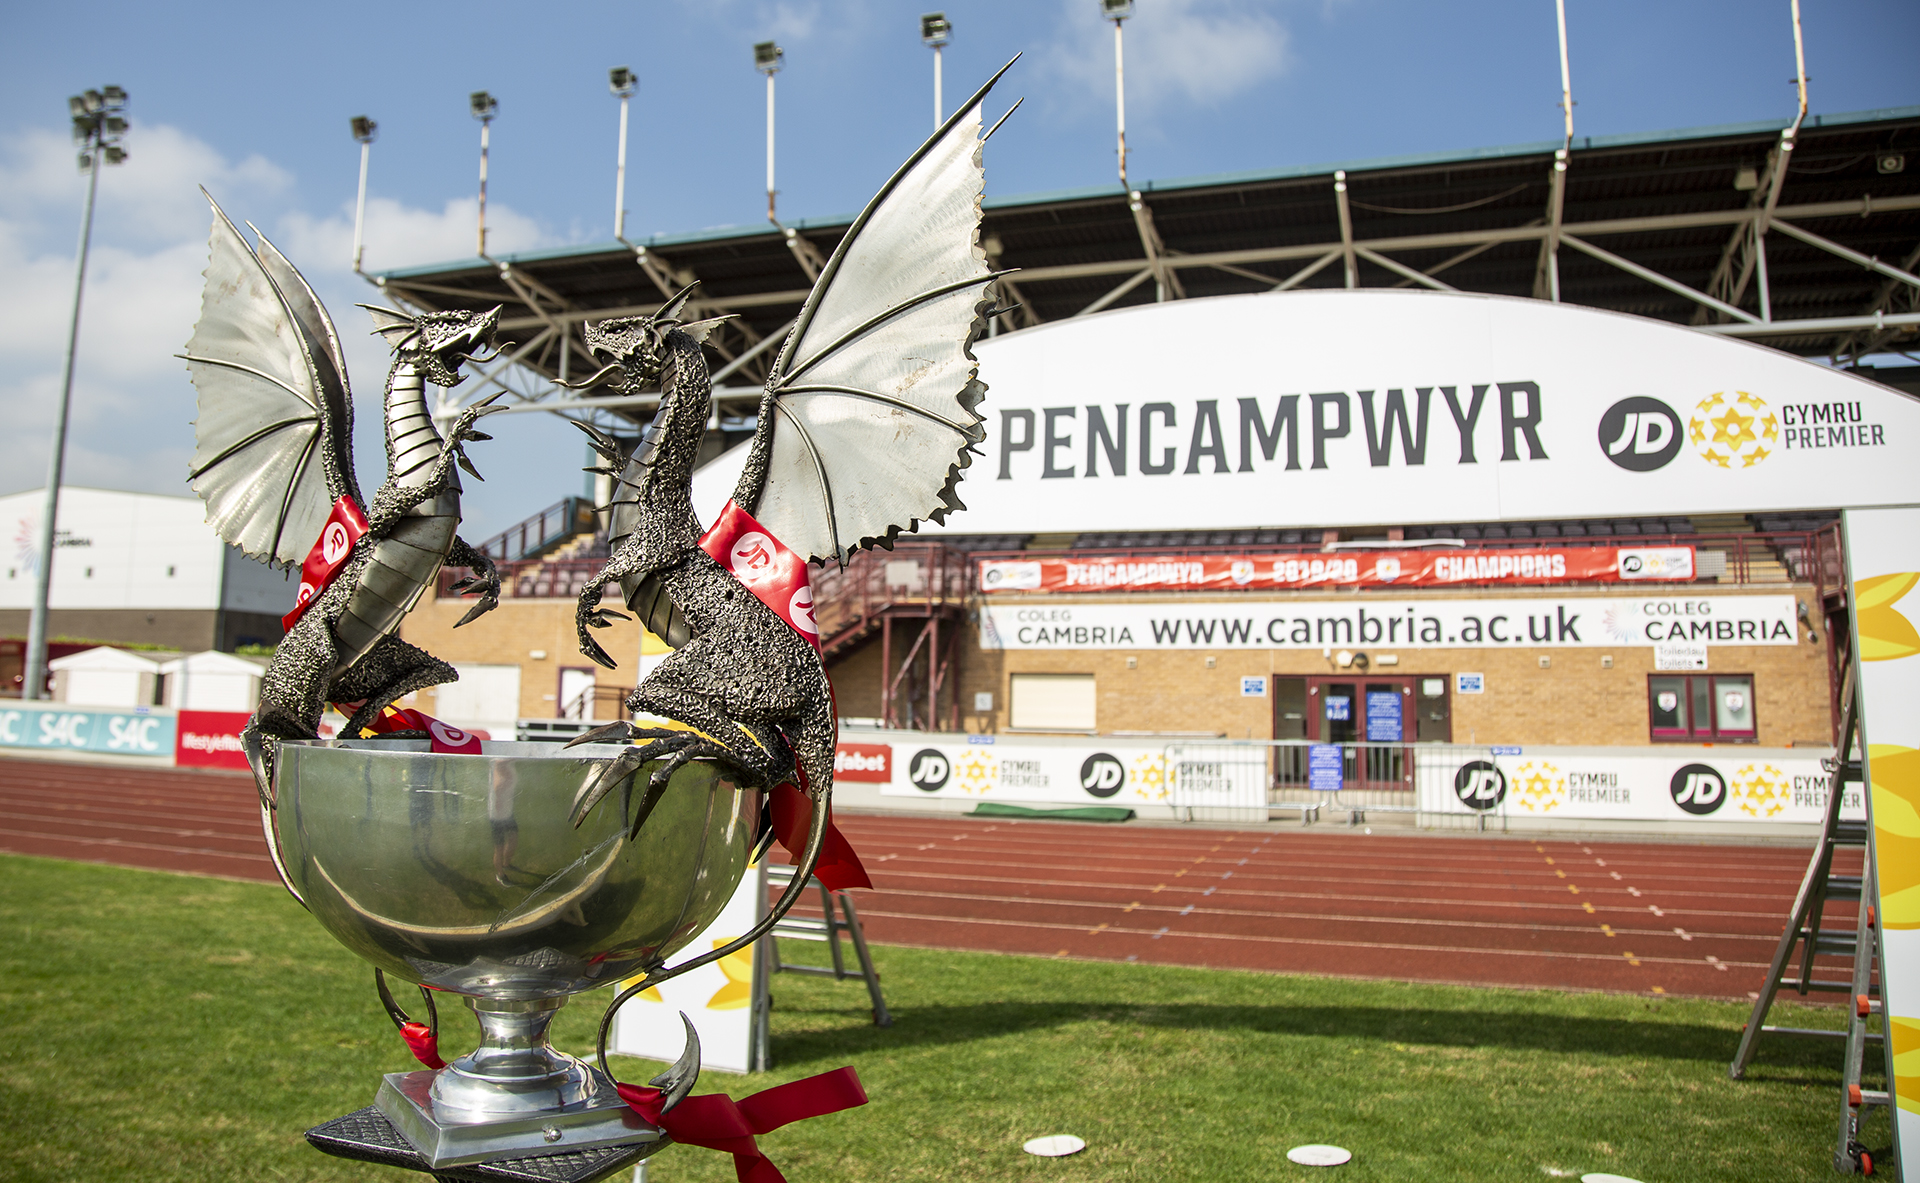 The JD Cymru Premier trophy at Deeside Stadium | © NCM Media